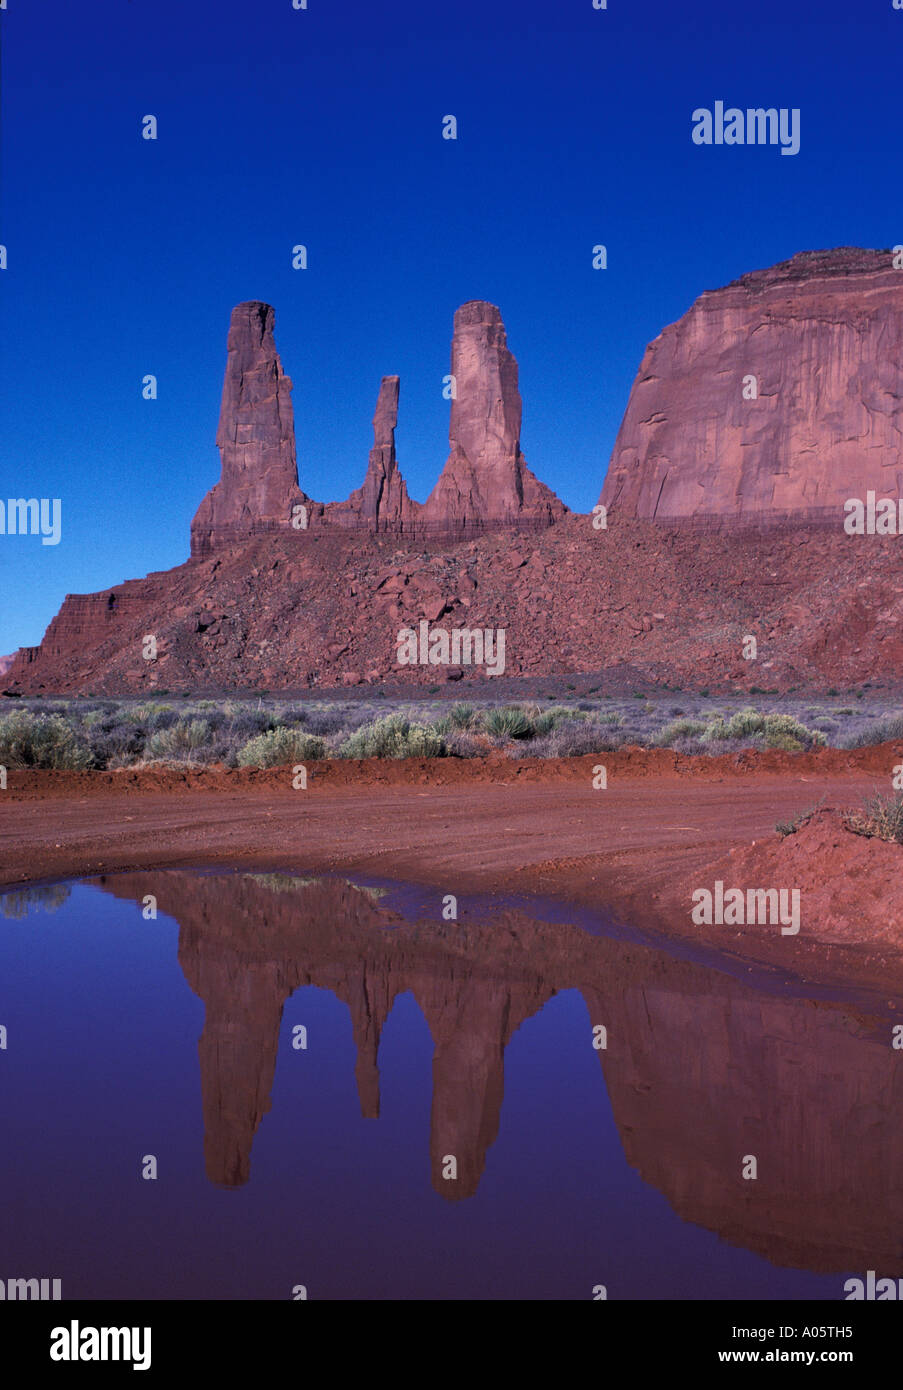 Die drei Schwestern Monument Valley Indianerland in Arizona und Utah Grenze Vereinigte Staaten von Amerika-Nordamerika Stockfoto